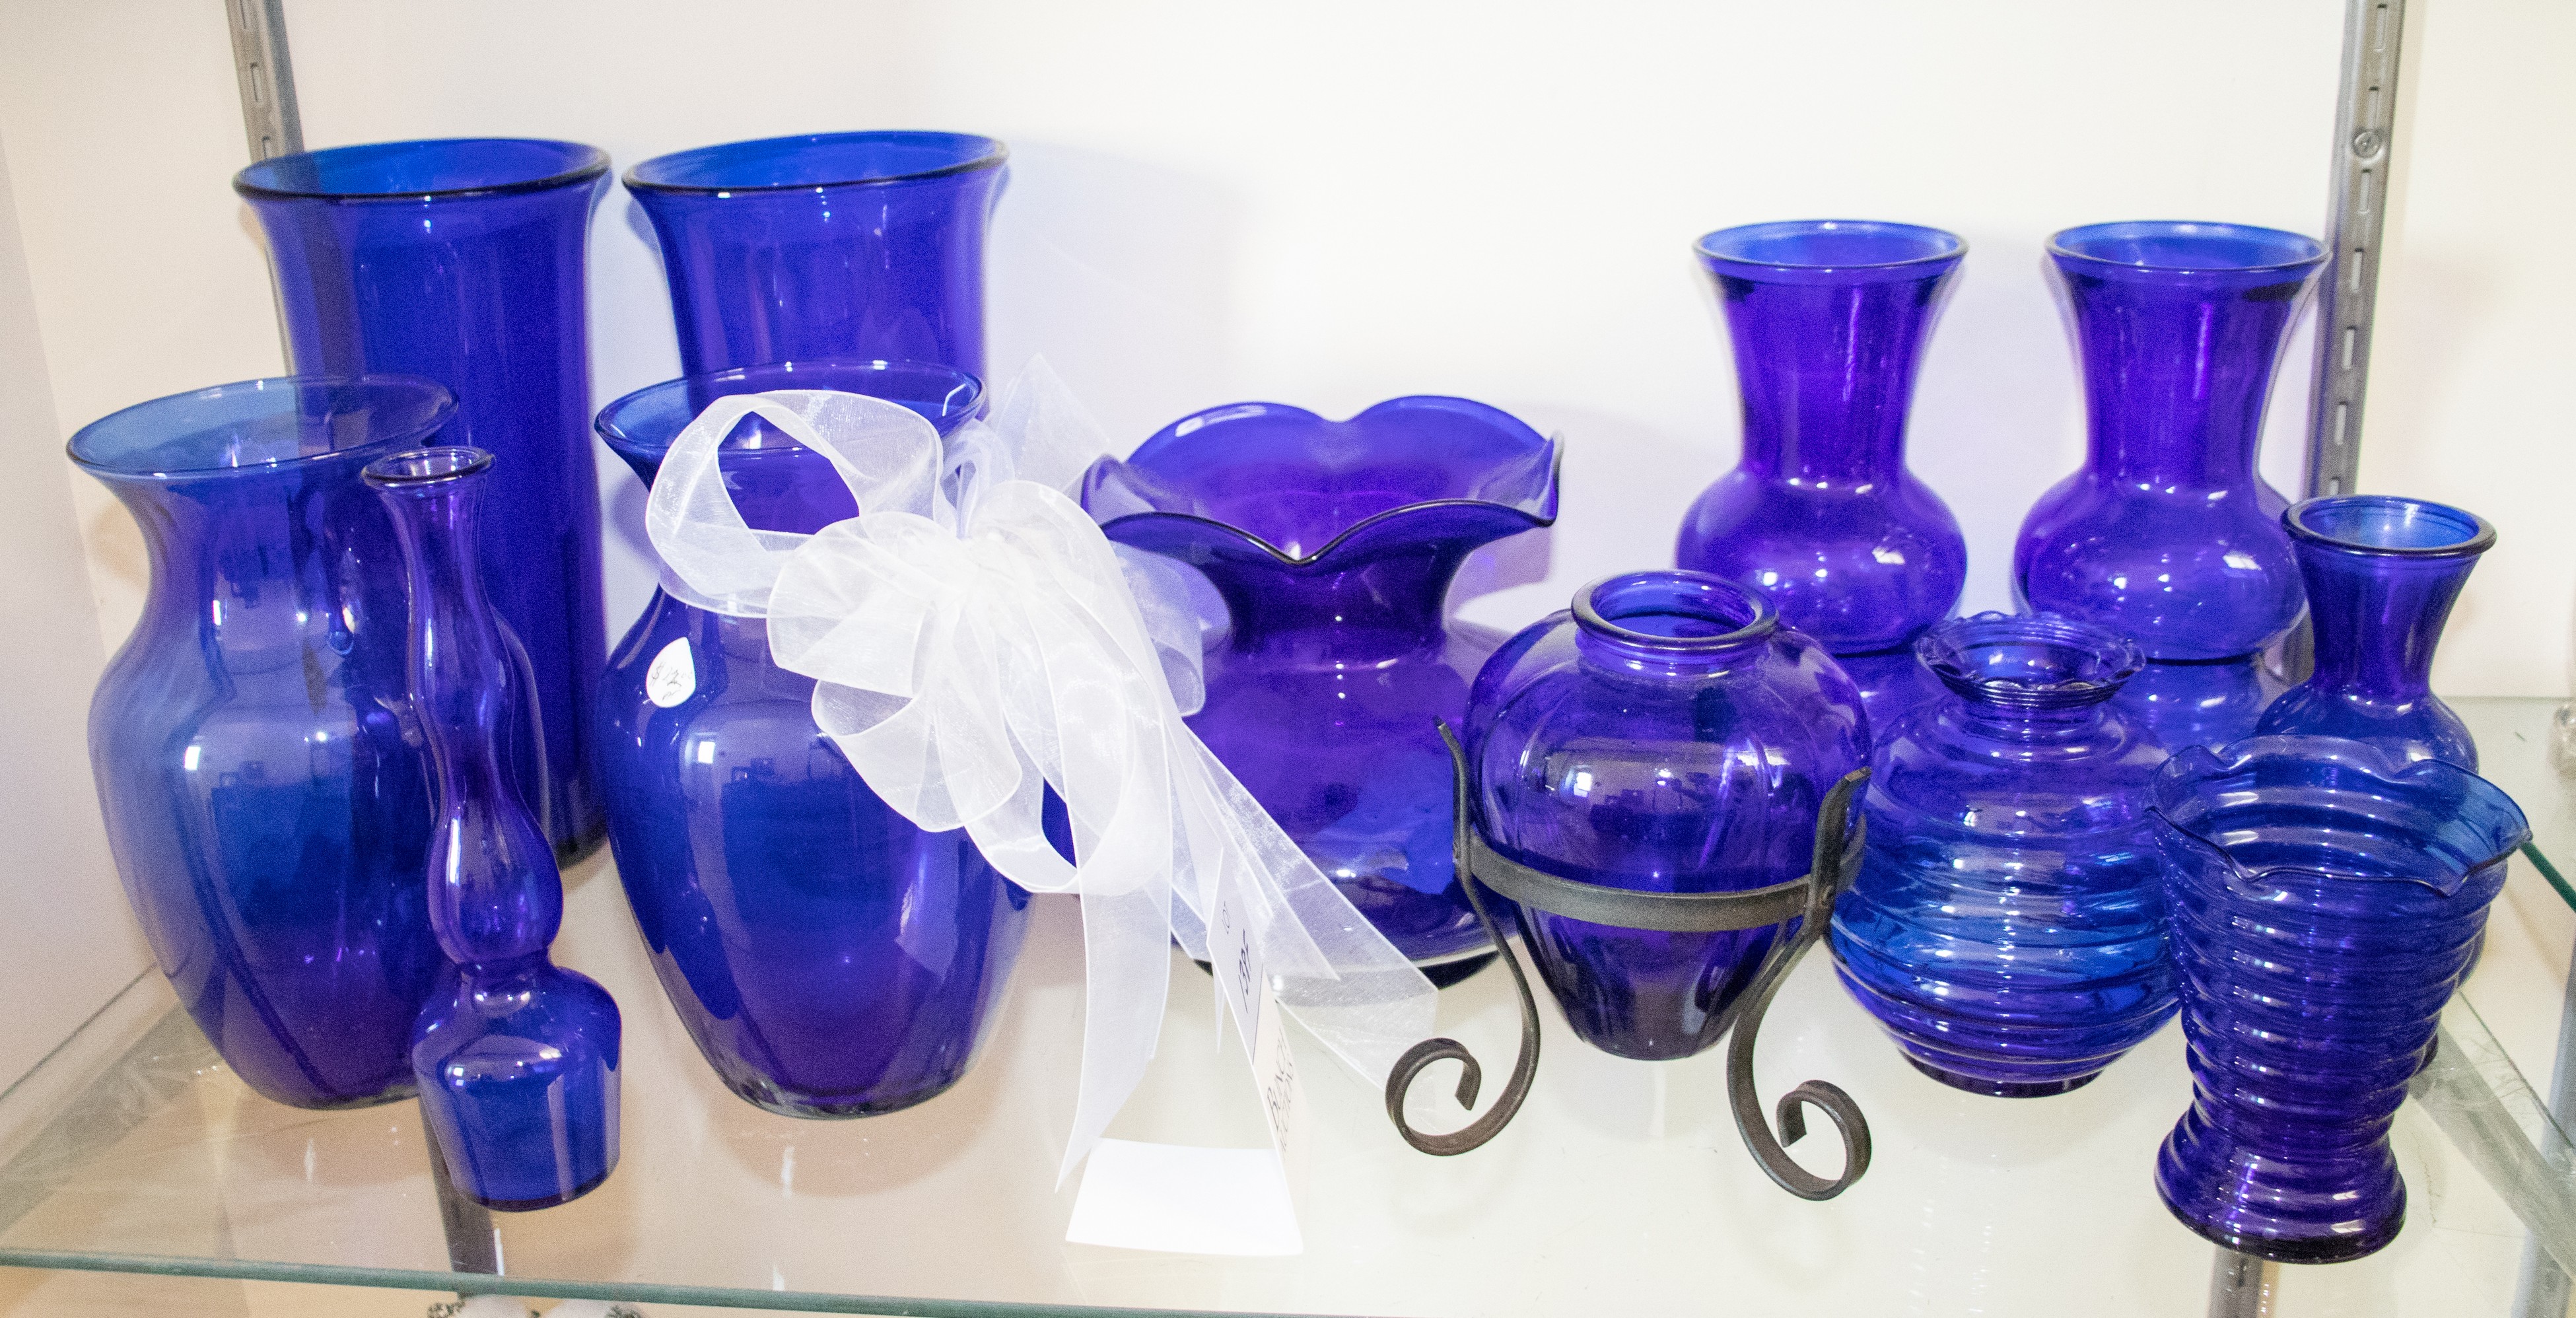 (12) Blue glass vases, tallest